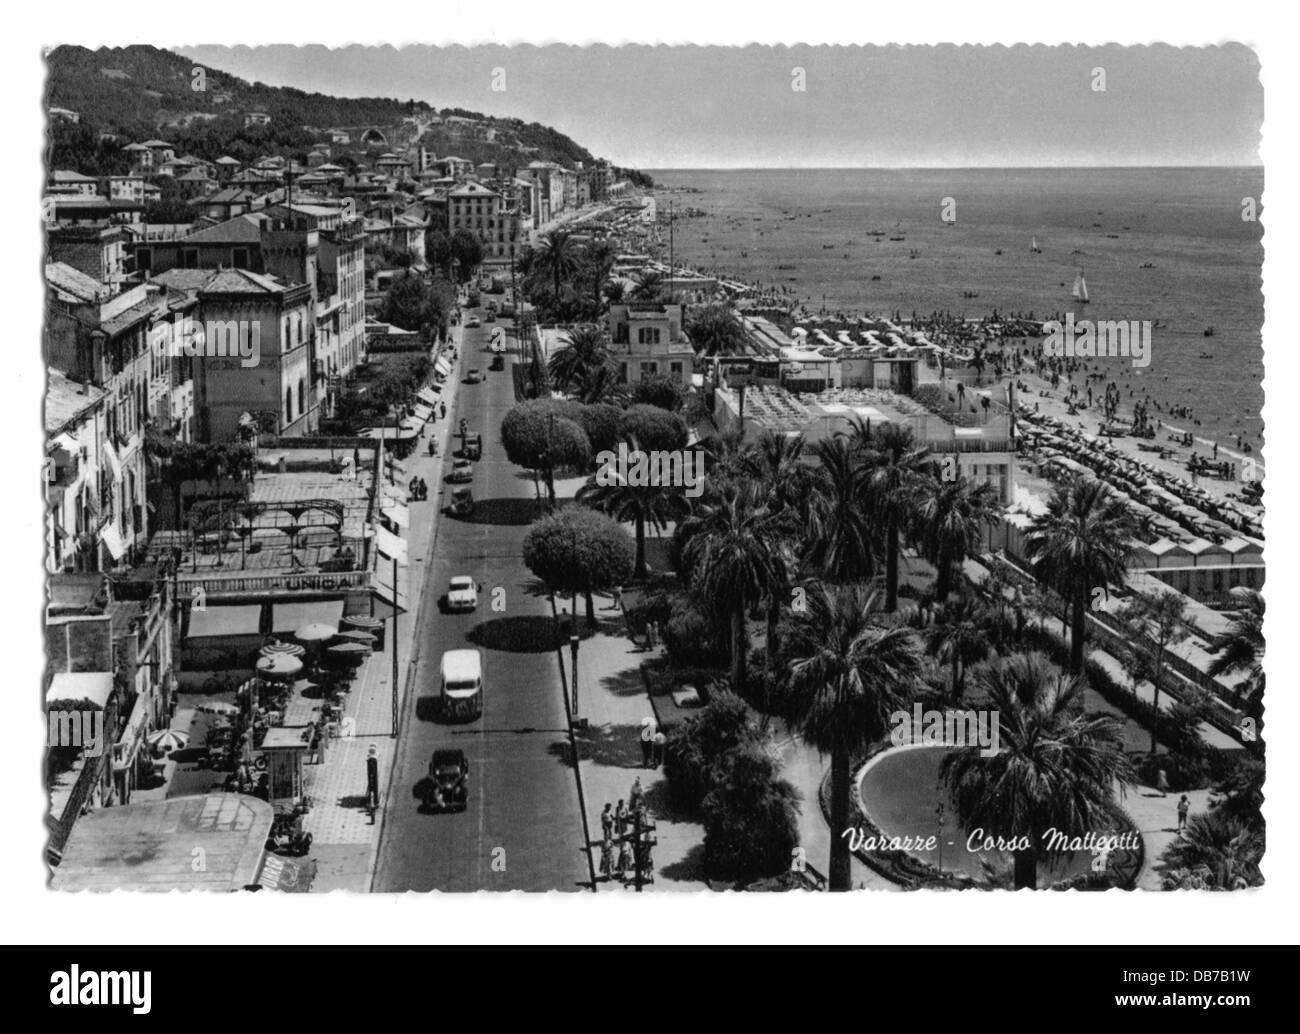 Geografia / viaggio, Italia, Varazze, strade, corso Matteotti, cartolina fotografica, anni 50, diritti aggiuntivi-clearences-non disponibile Foto Stock